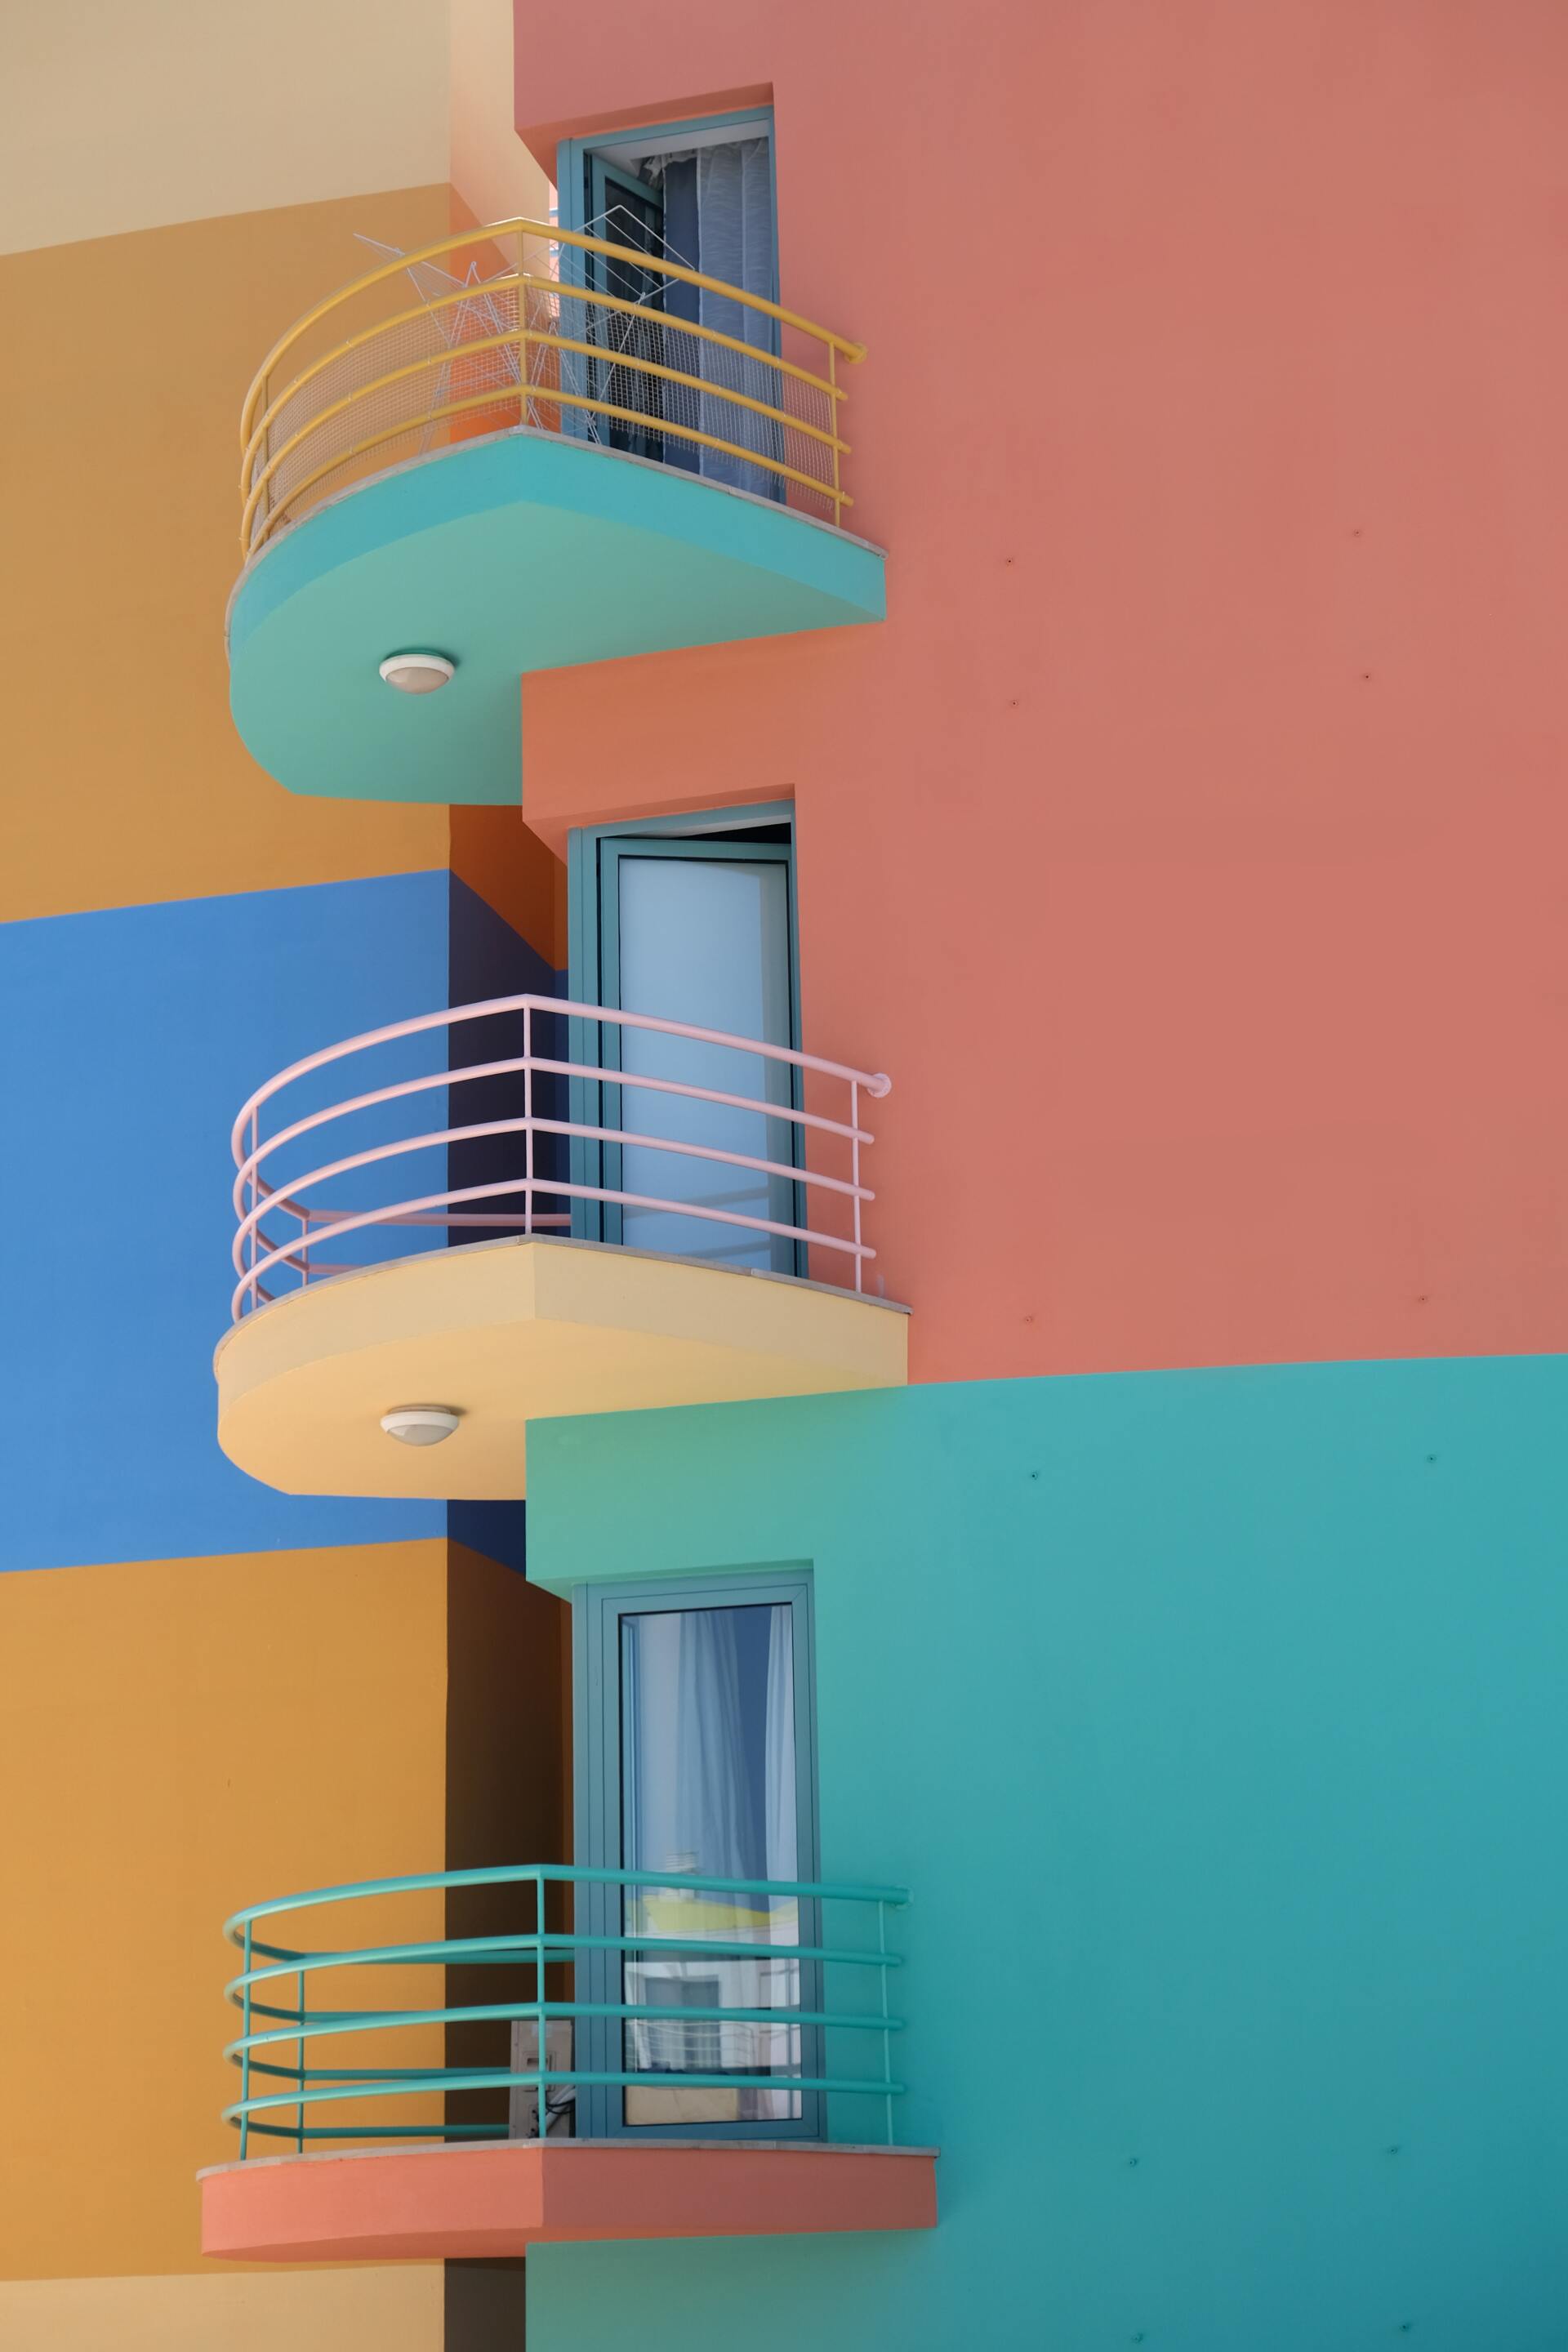 Architektur und Farbe – Bunte Hausfassade mit Balkonen